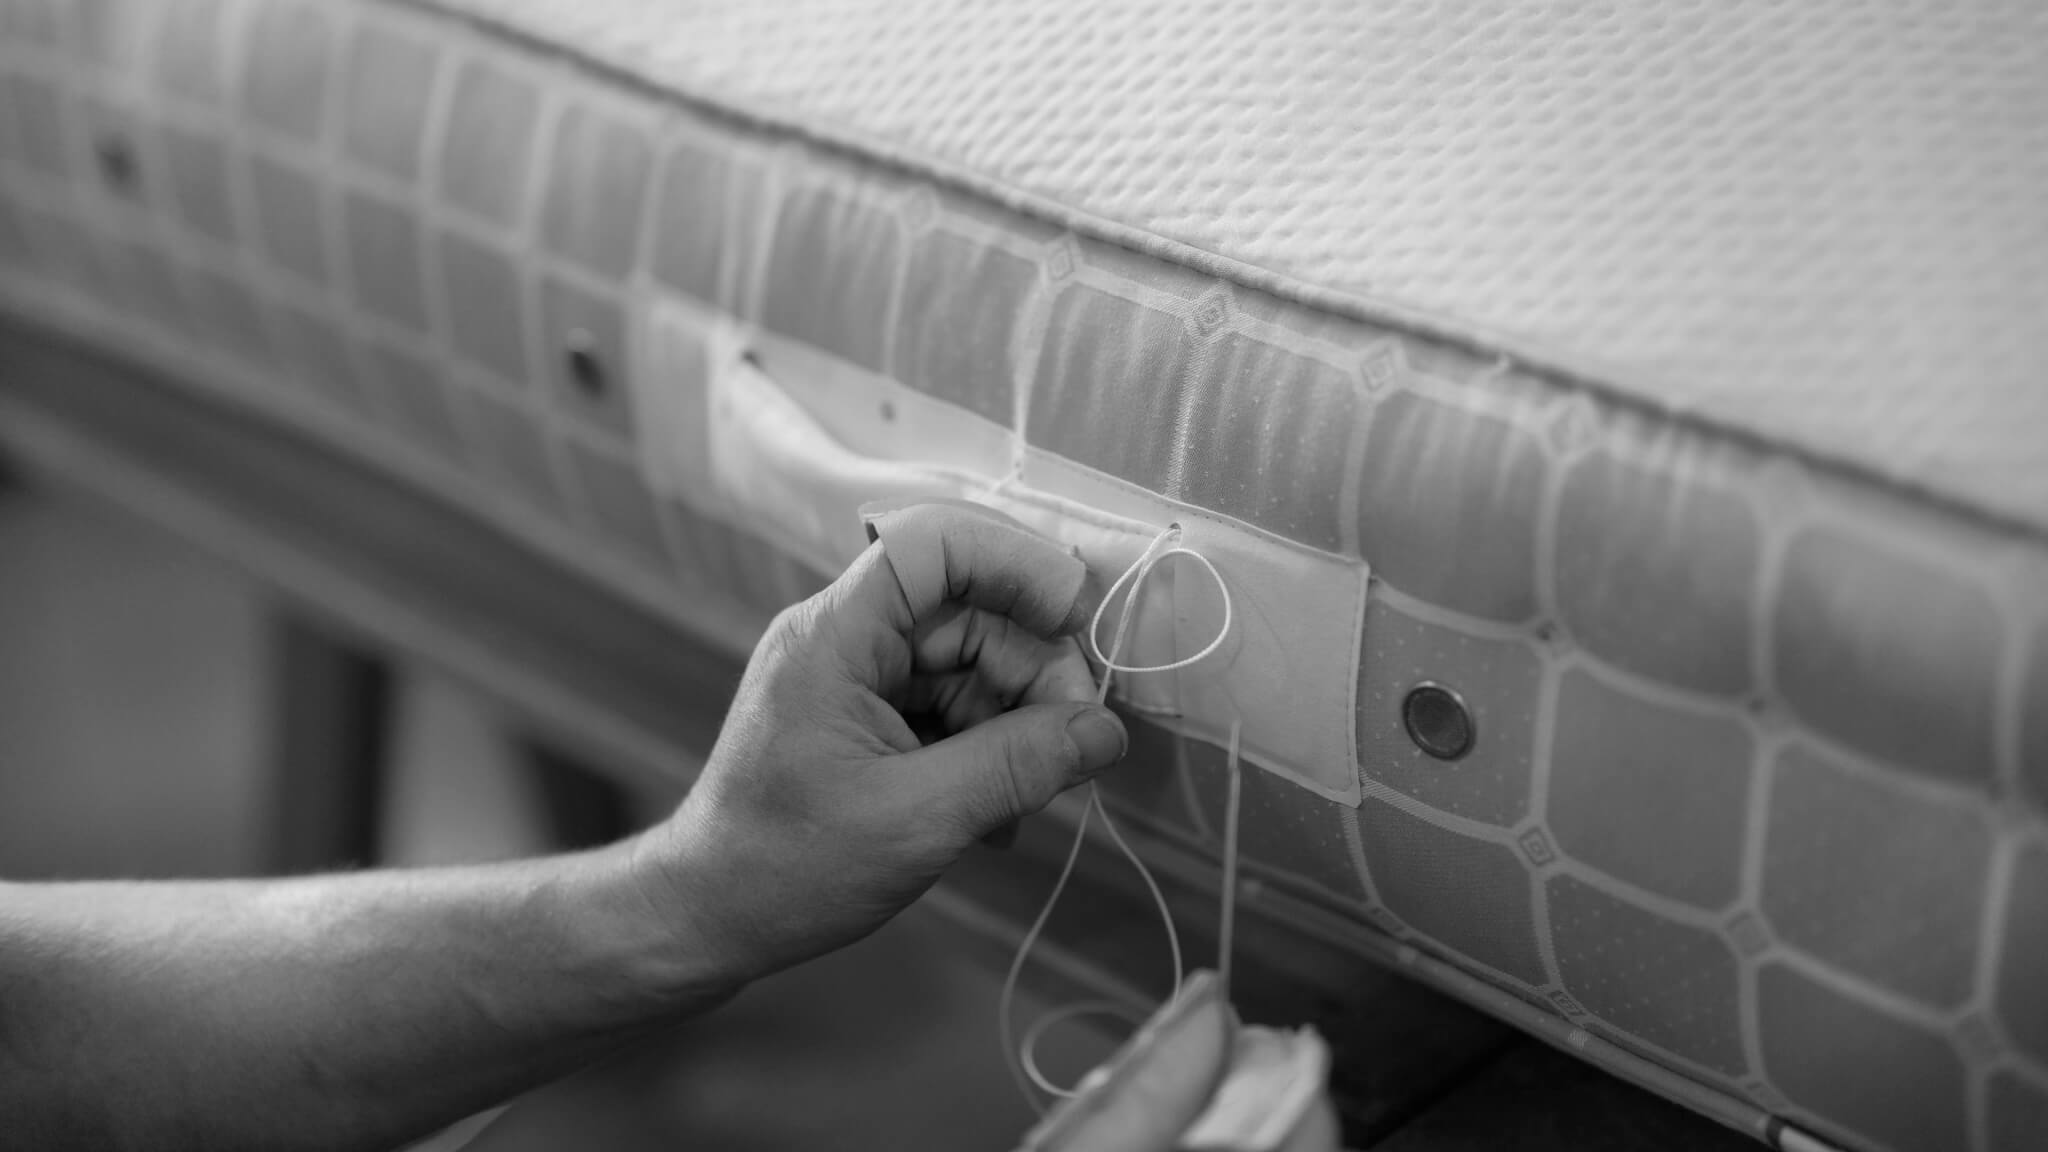 A Savoir craftsmen stitching the handles onto a mattress